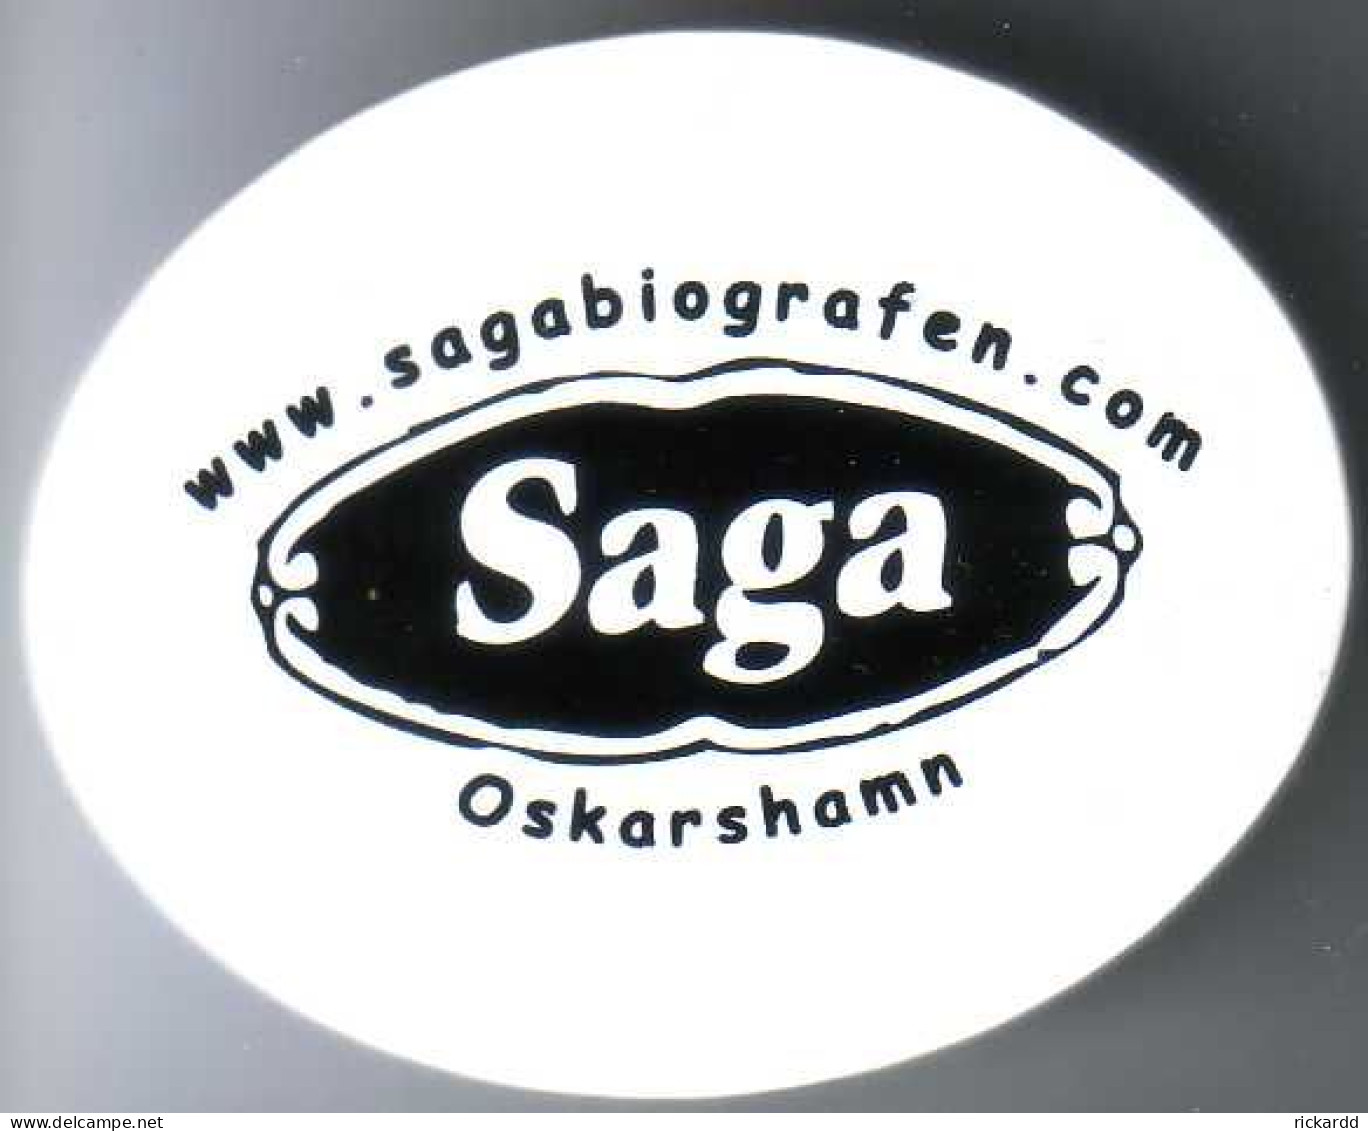 Kitchenmagnet - Saga Oskarshamn - Magnets